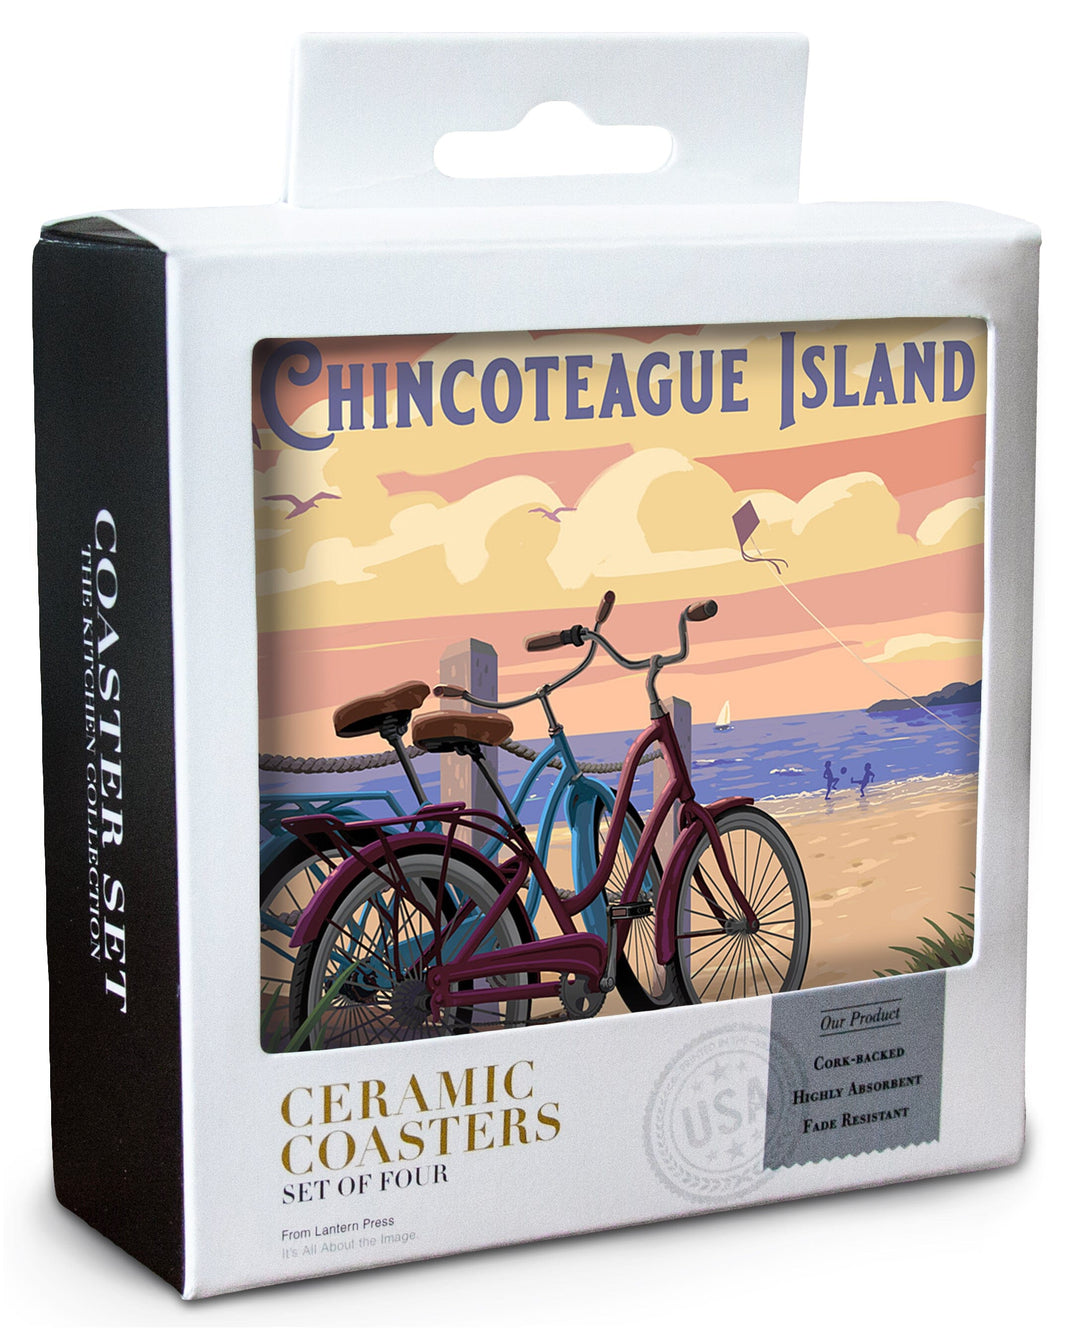 Chincoteague Island, Virginia, Painterly, The Beach Is Calling, Beach Bikes Coasters Lantern Press 